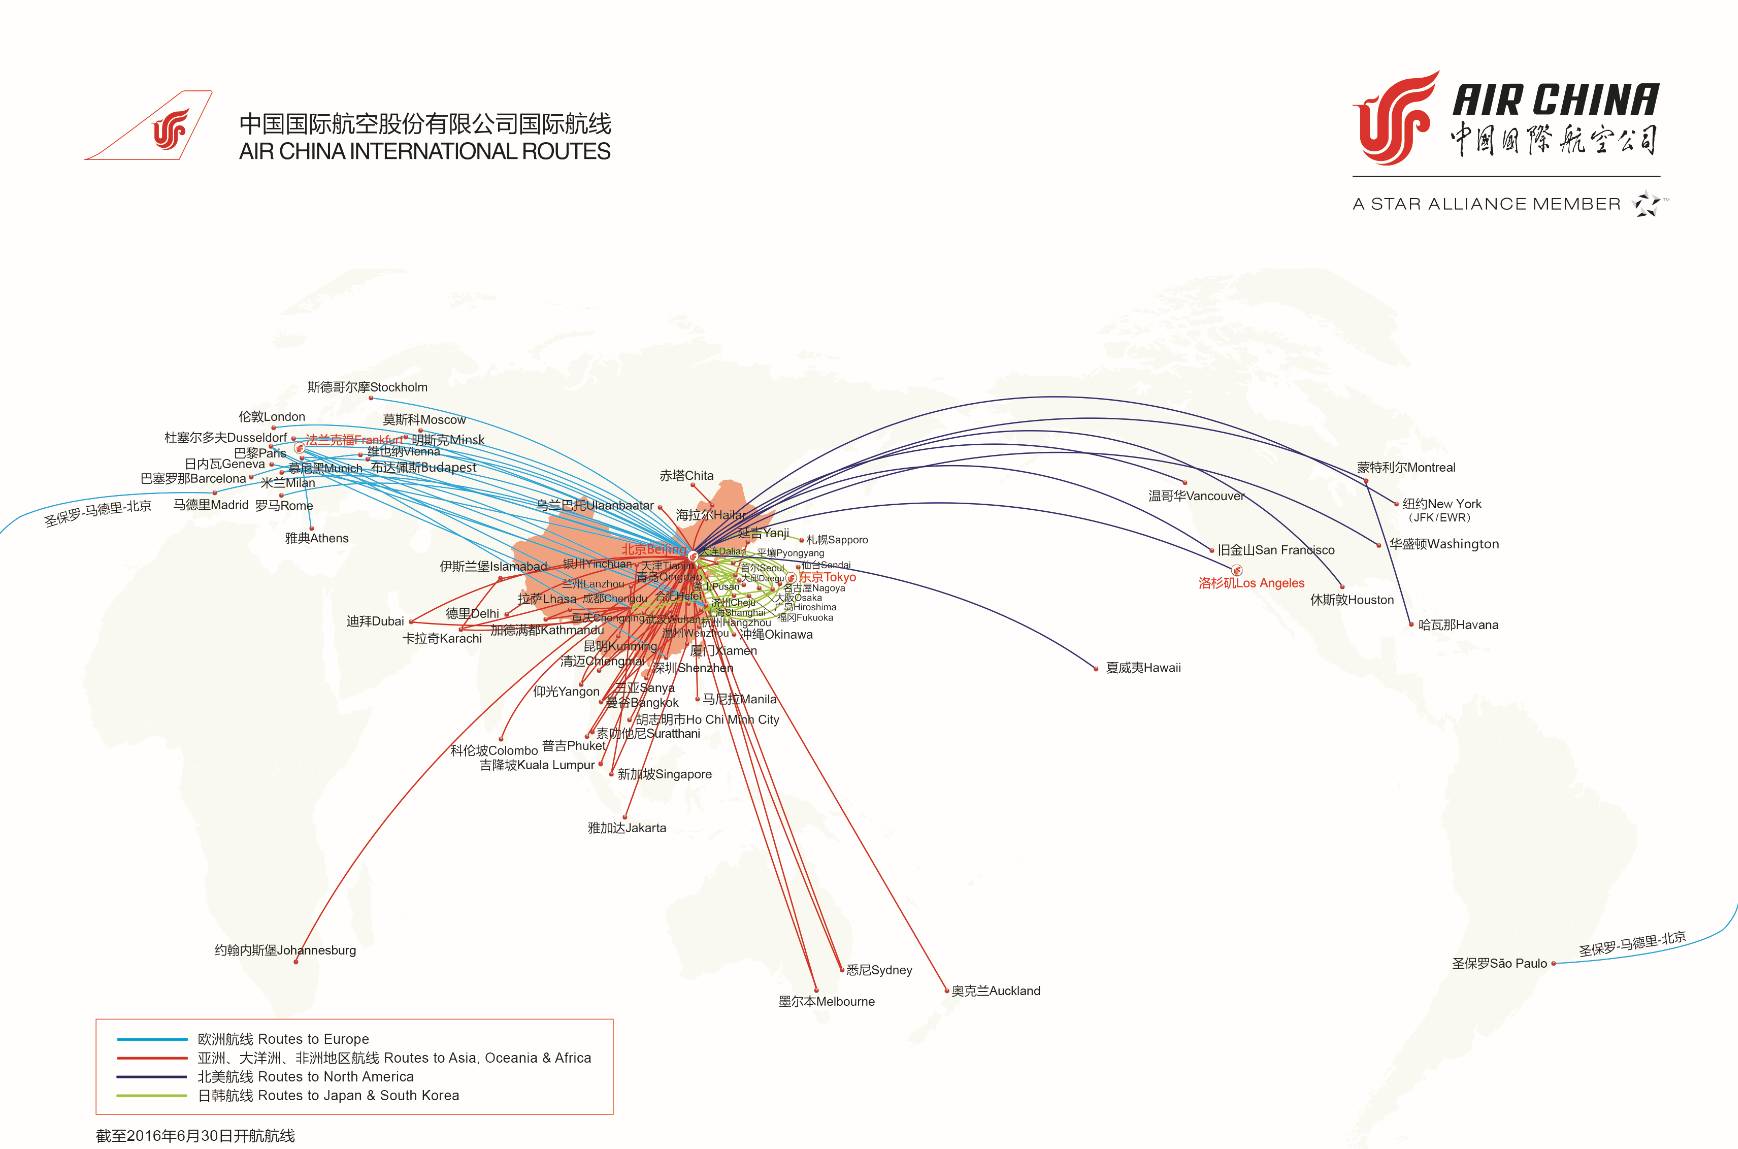 国航国际航线网络图,点击大图更清晰 这样一连串的数据优势,以及